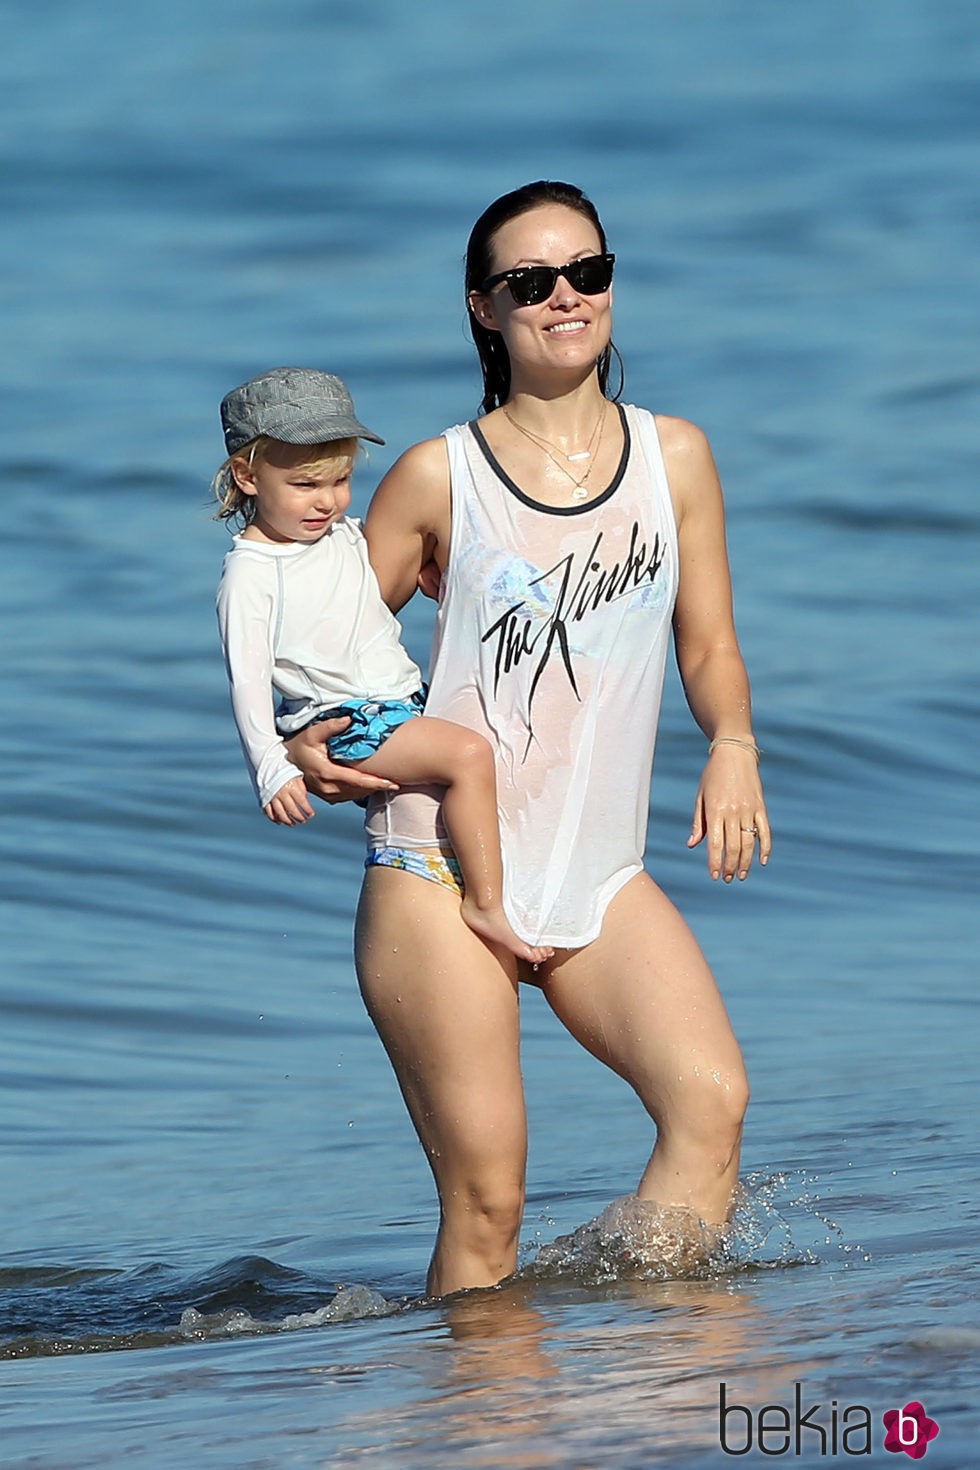 Olivia Wilde dándose un baño en el mar con su hijo Otis en brazos